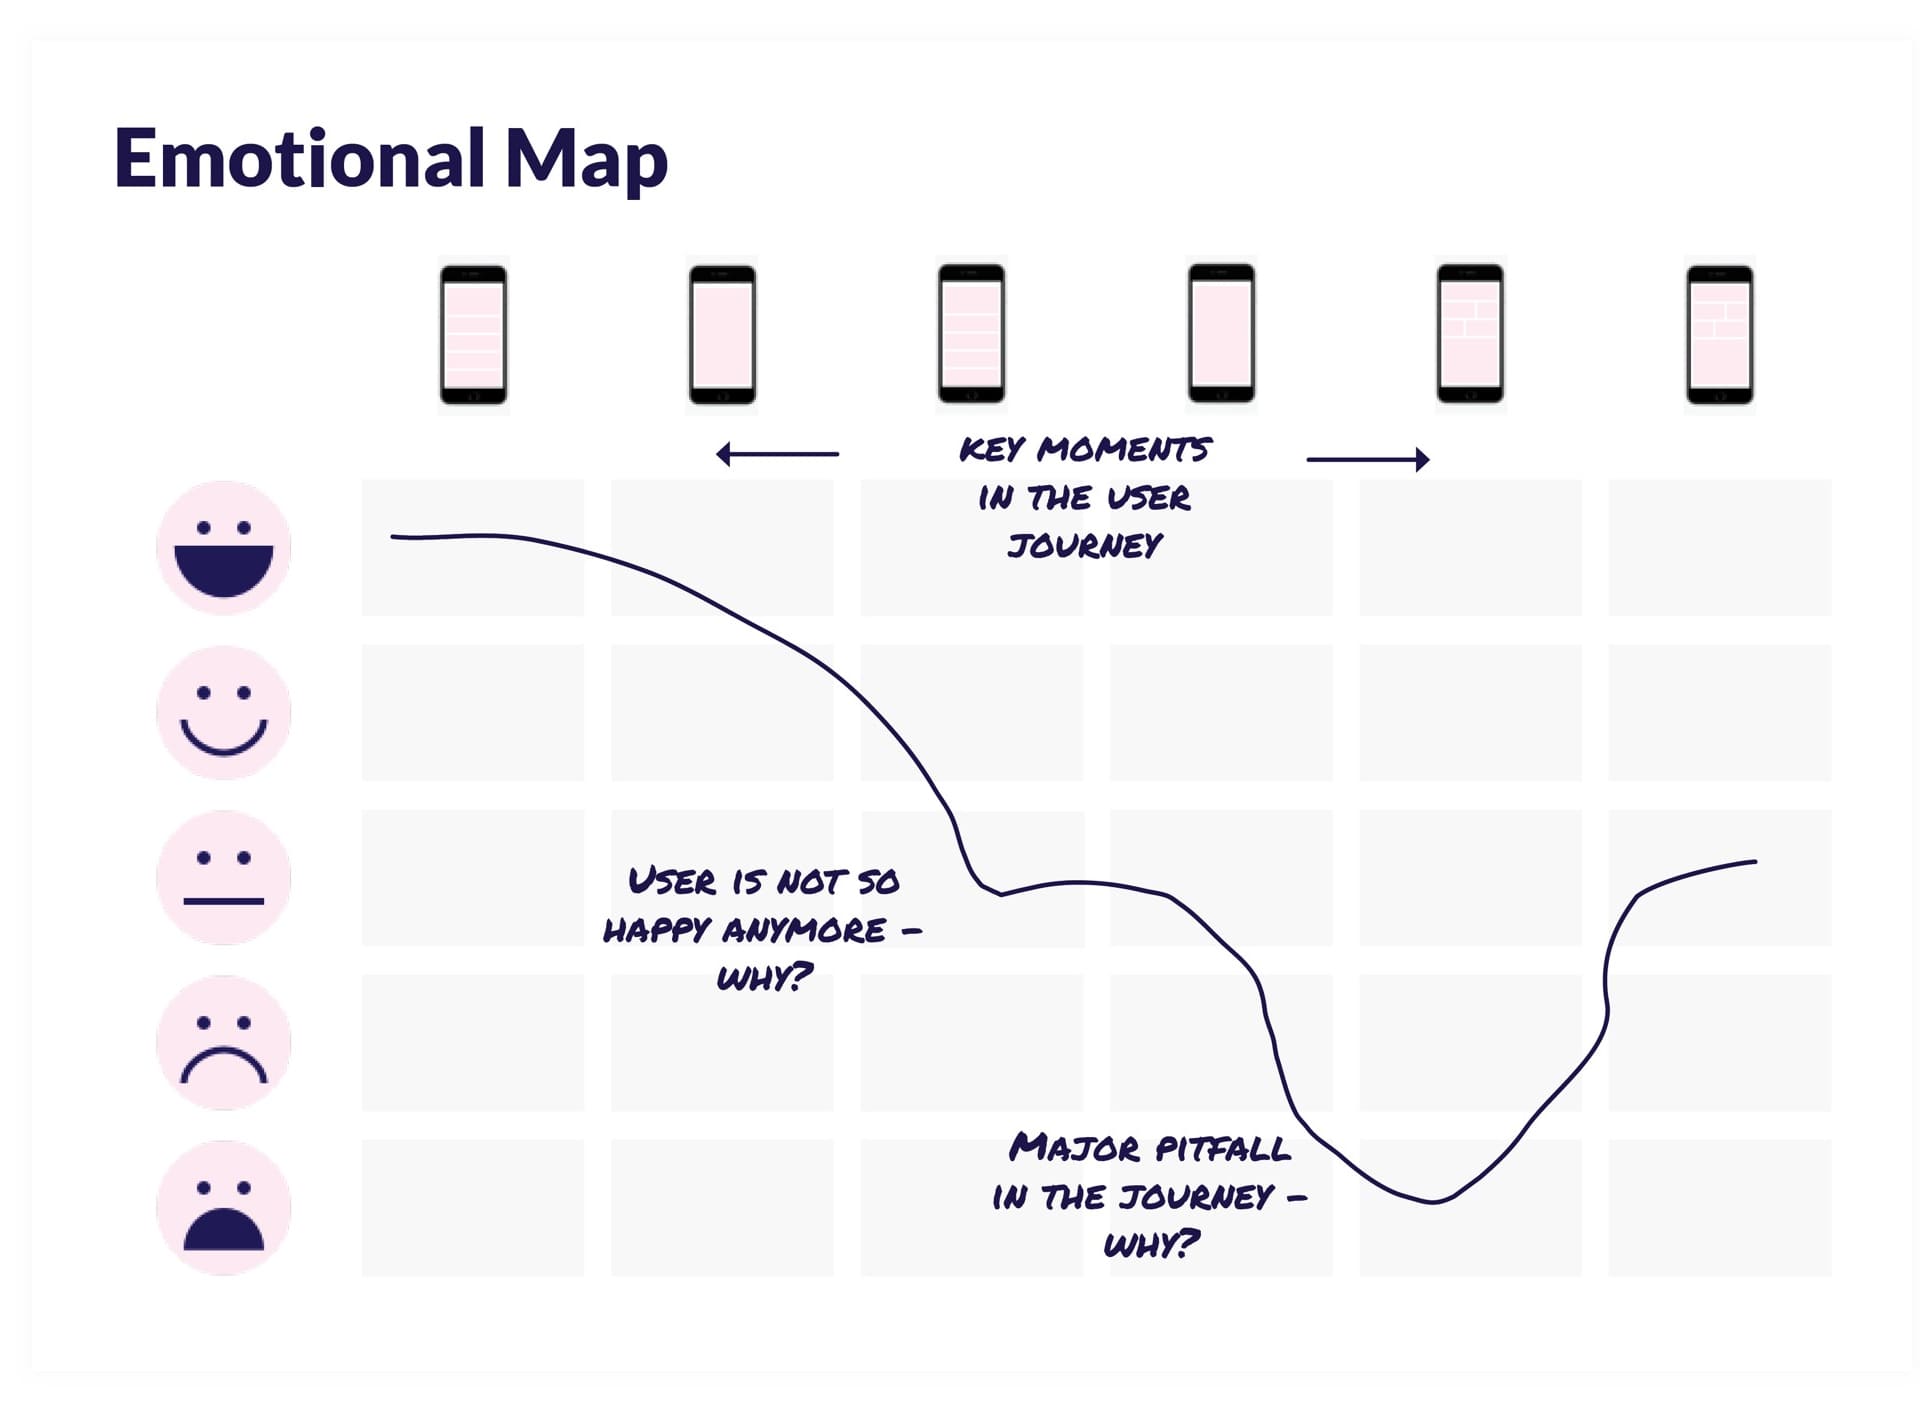 Emotionnal map d'un utilisateur tout au long de sa journée